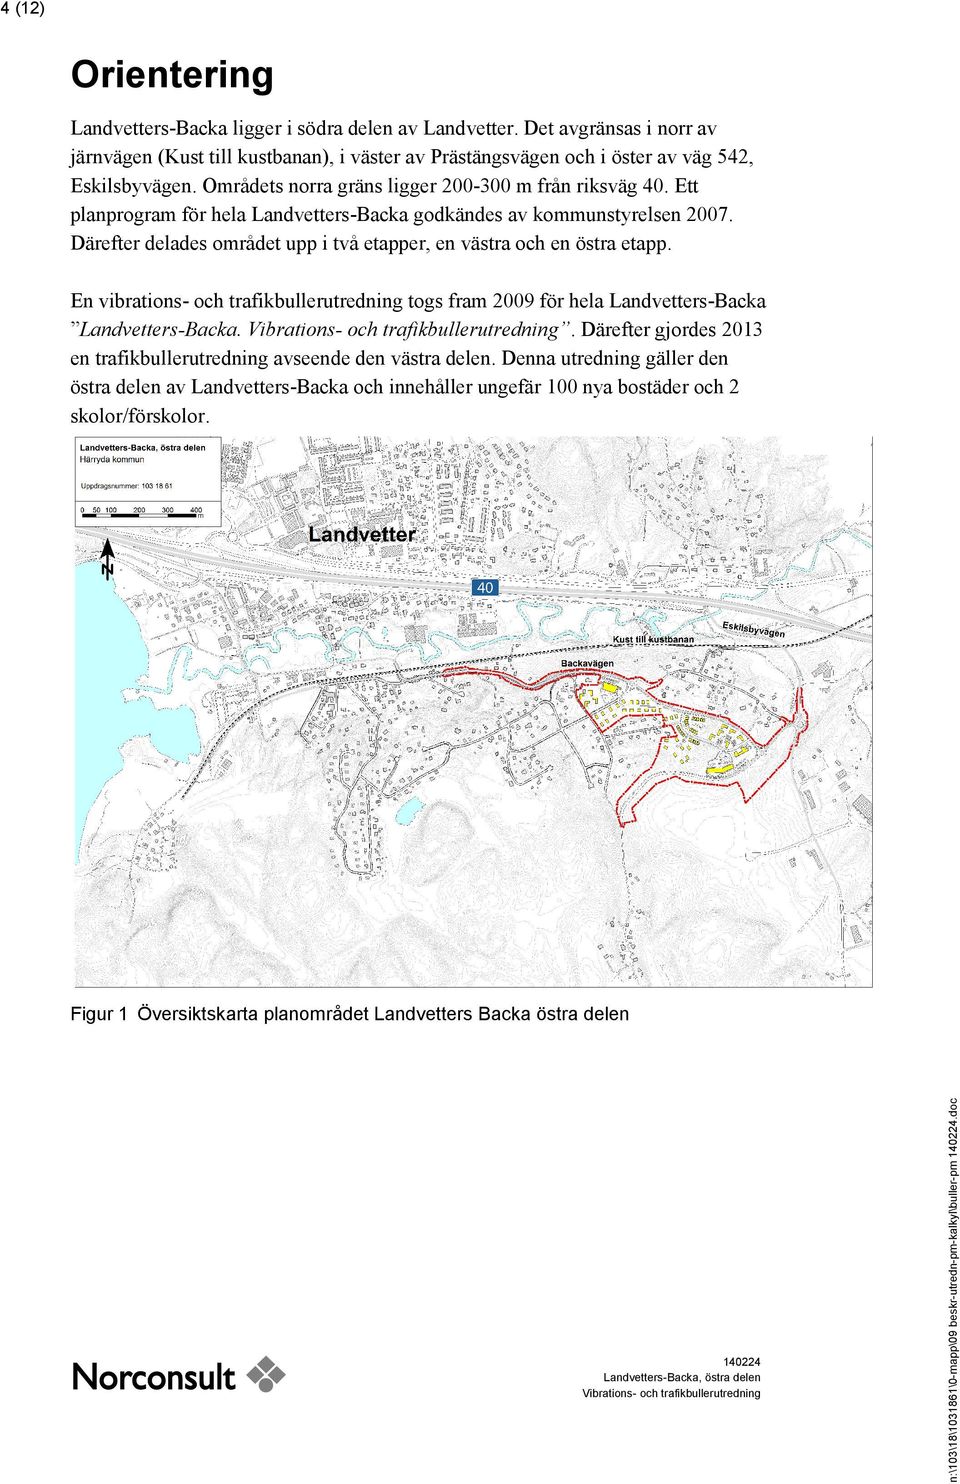 Därefter delades området upp i två etapper, en västra och en östra etapp. En vibrations- och trafikbullerutredning togs fram 2009 för hela Landvetters-Backa Landvetters-Backa.